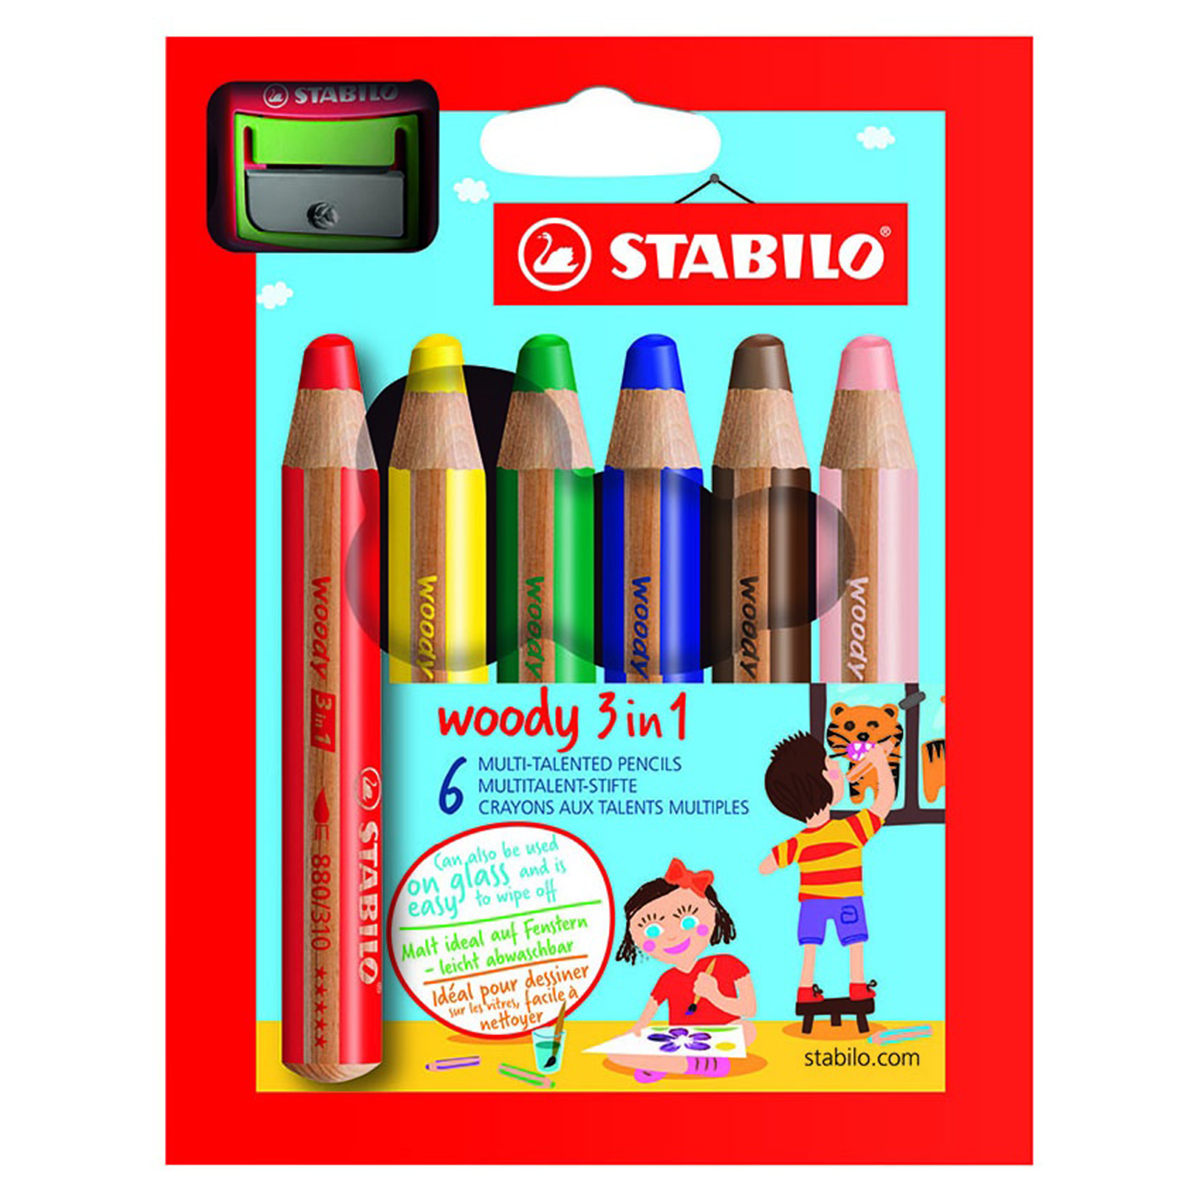 Stabilo Woody Jumbo Pencil Set of 18-3 in 1 Sharpener and Paint Brush 